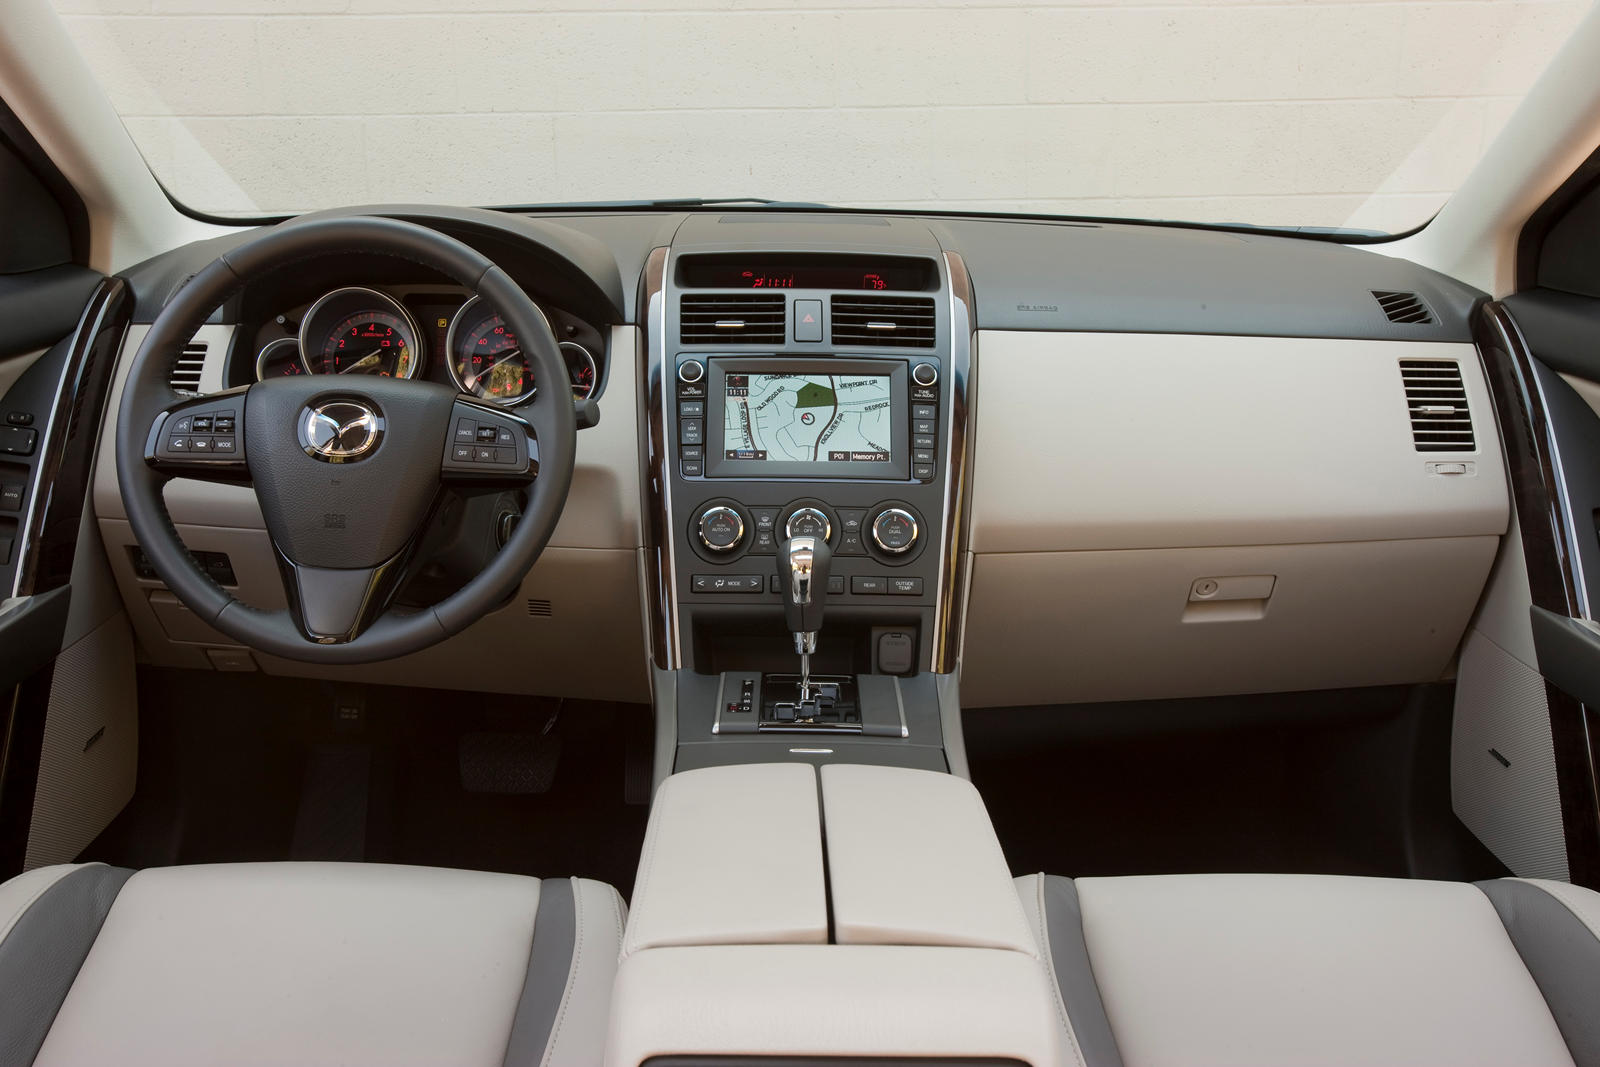 2012 Mazda CX-9 Interior Photos | CarBuzz